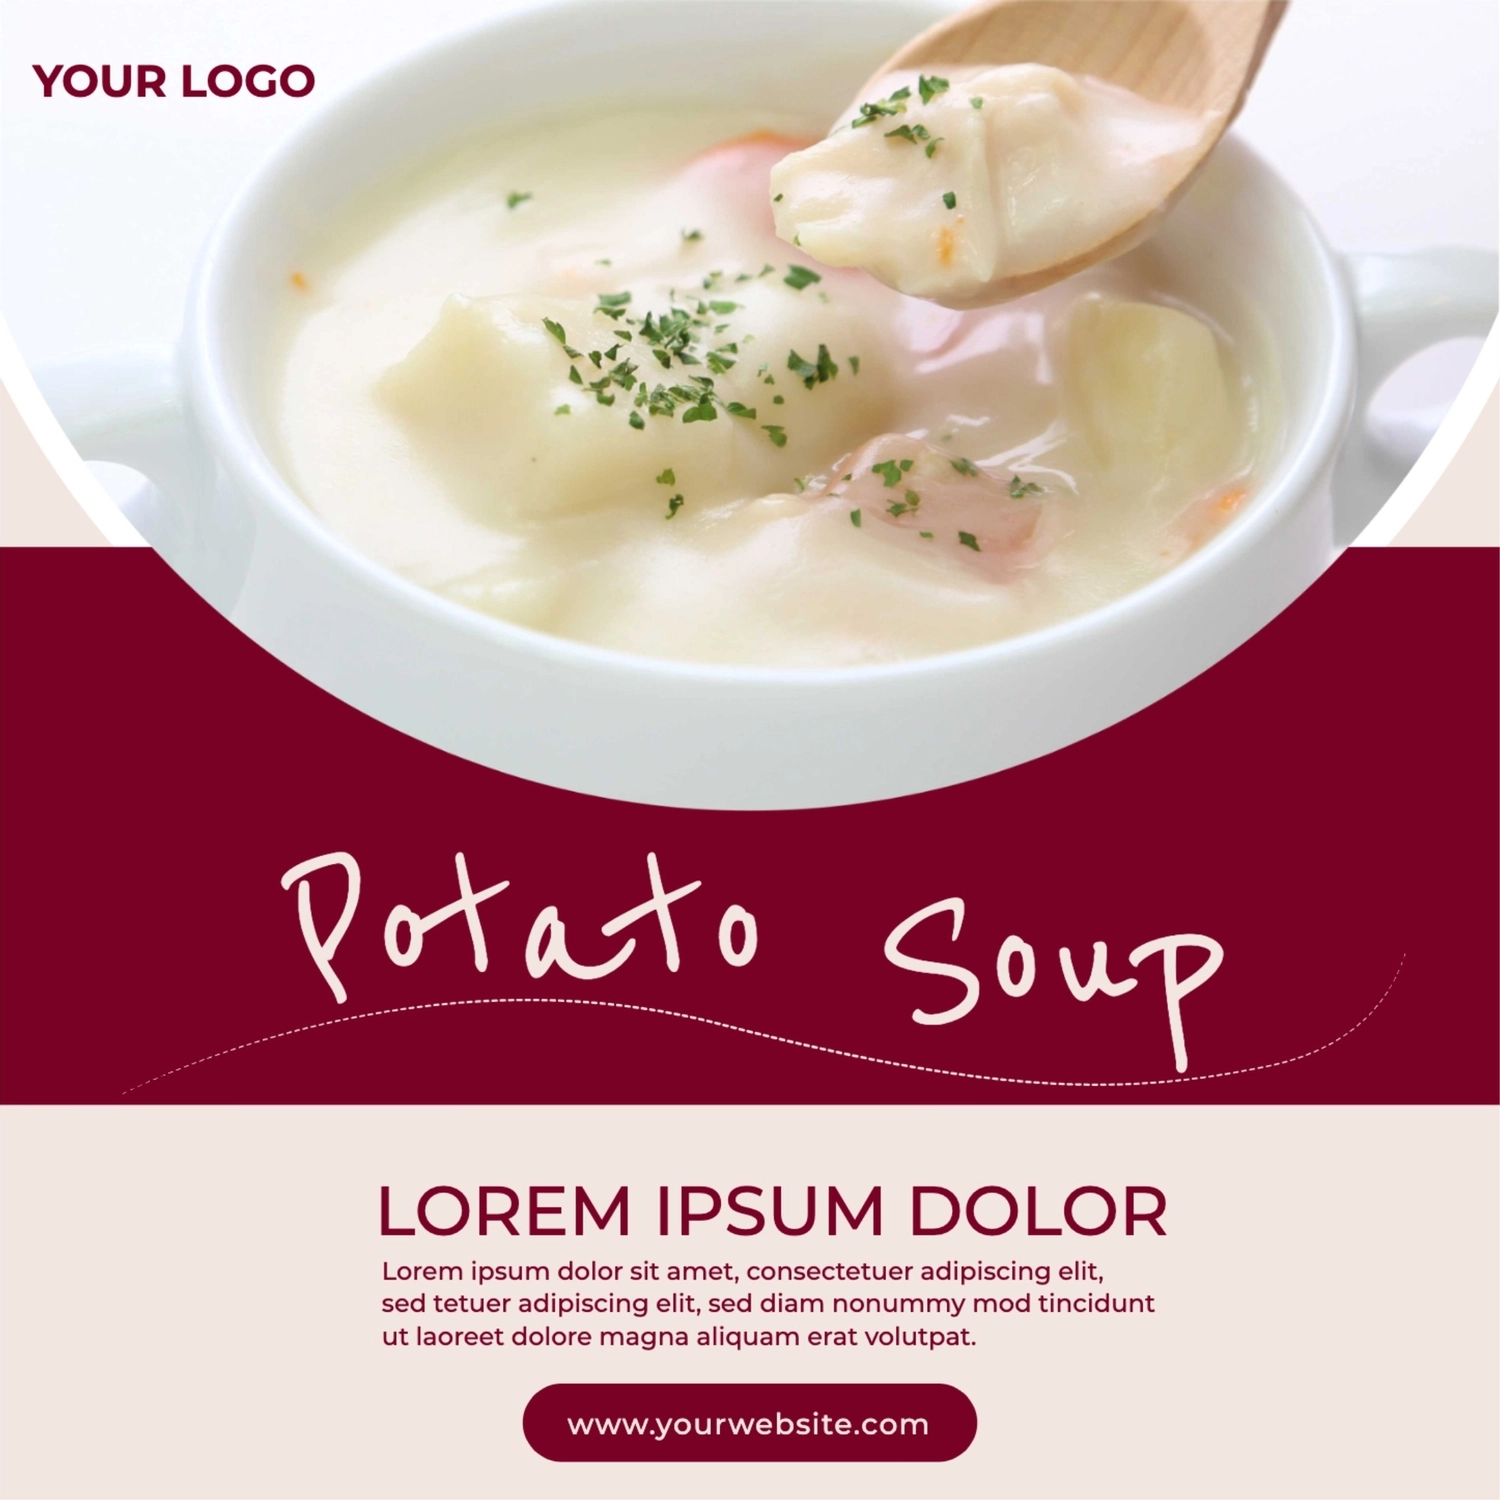 ポテトスープ, food, Cafe, restaurant, Instagram Post template